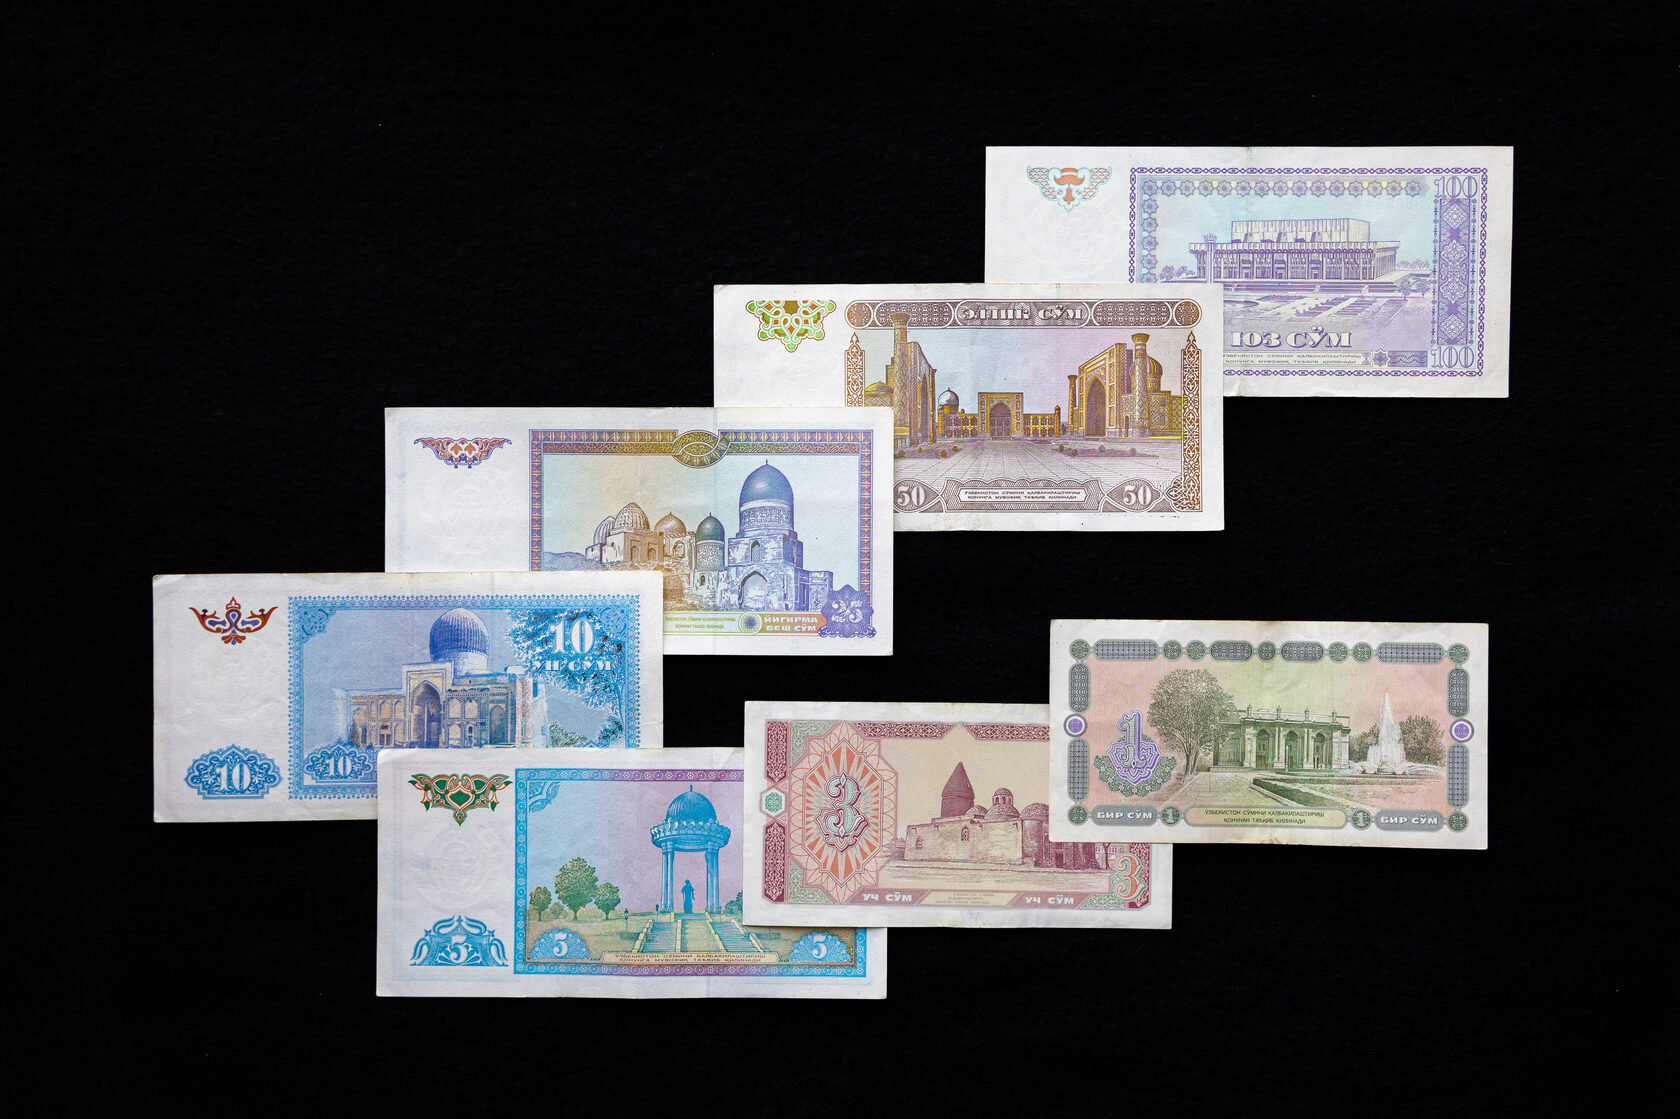 1000 р в узбекских сумах. 2000 Узбекских сум. Узбекский сум банкноты в обращении. Нац валюта Узбекистана. 500 Сум Узбекистан.